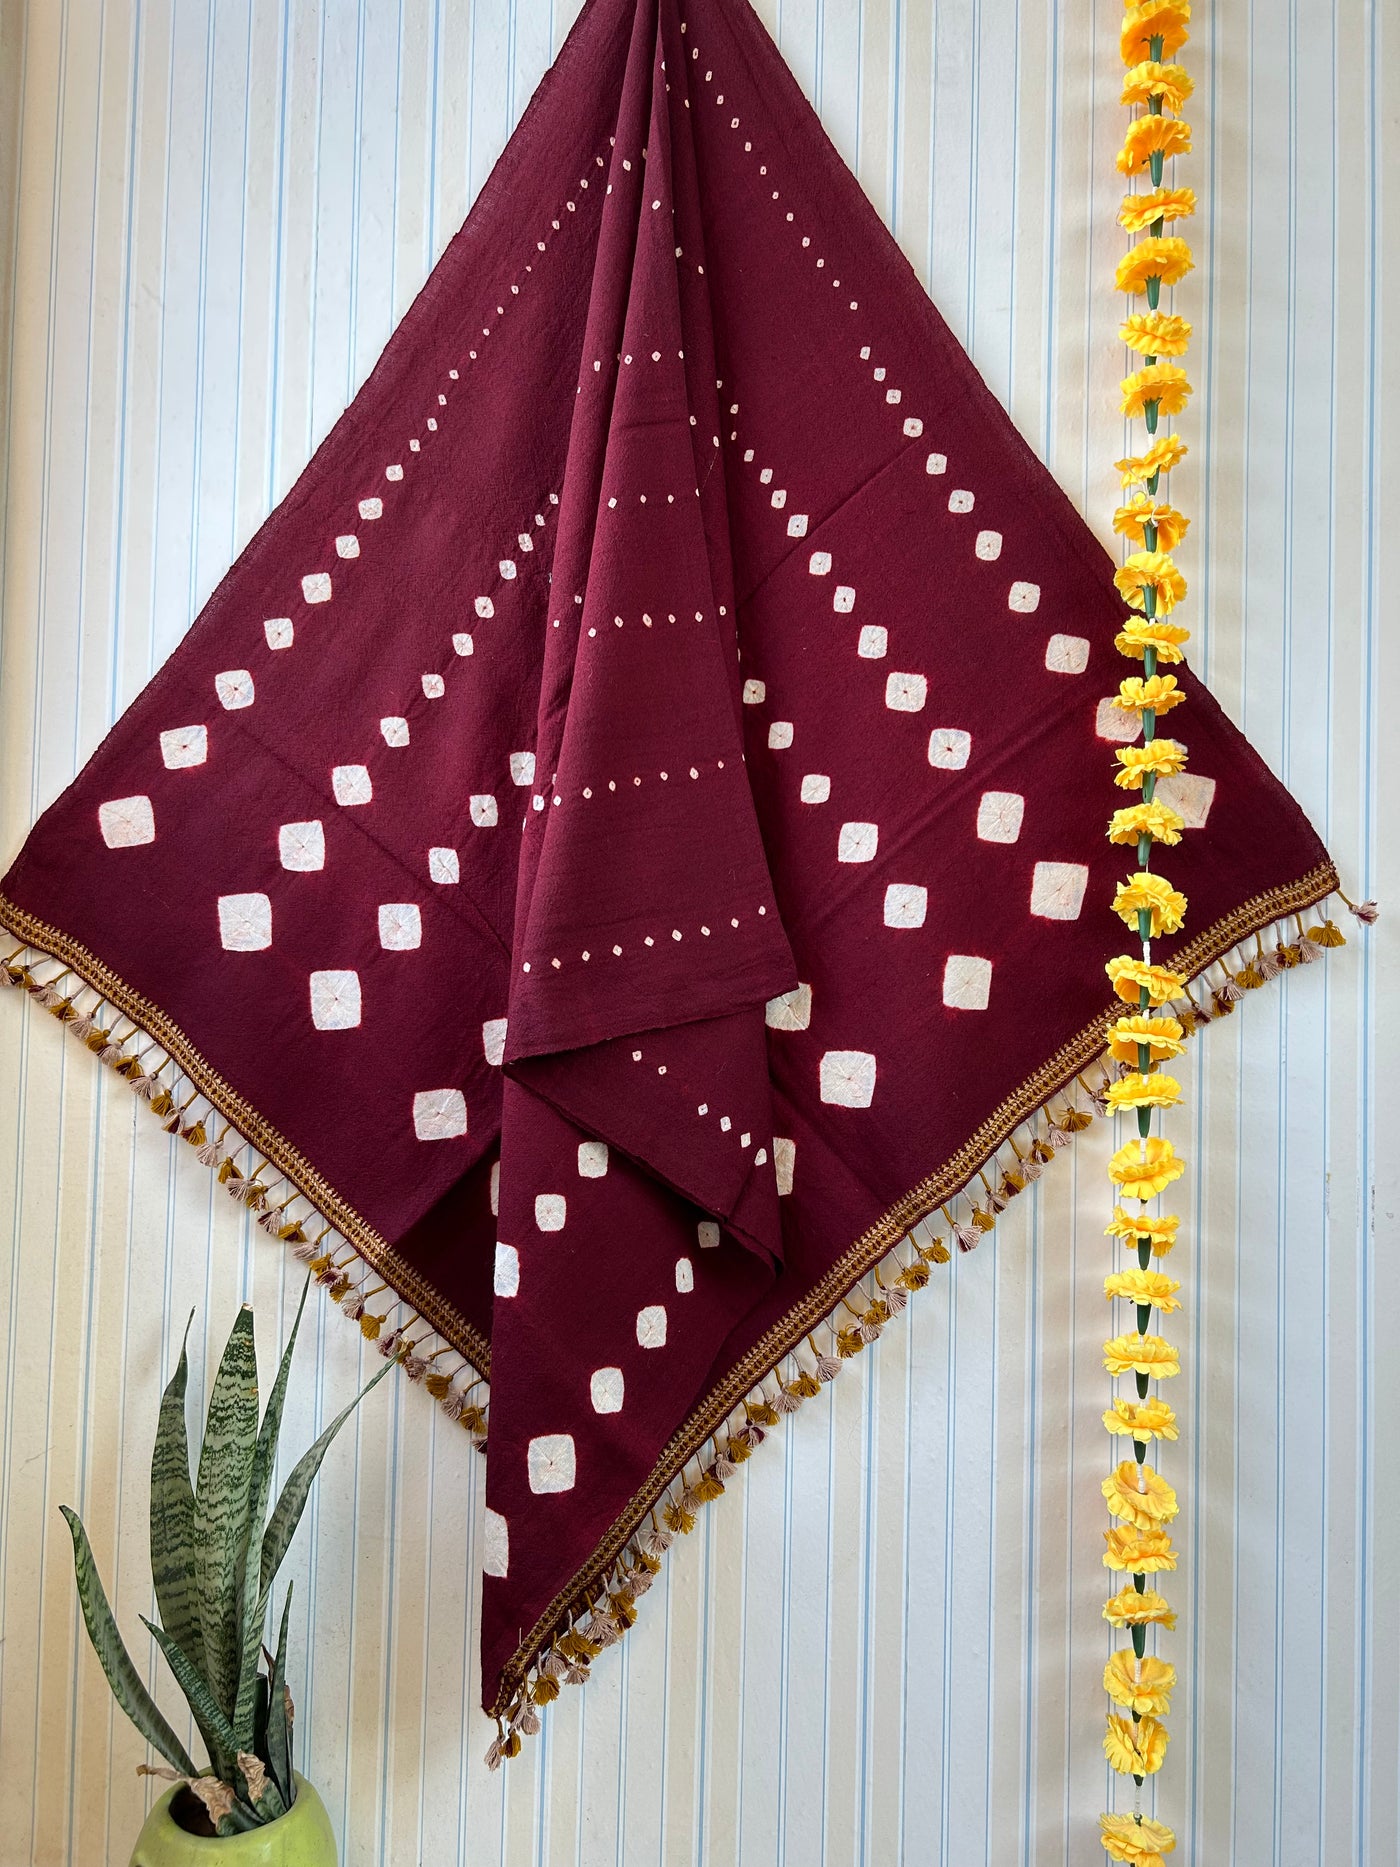 Magical maroon:Handloom Marino Wool bandhni shawl